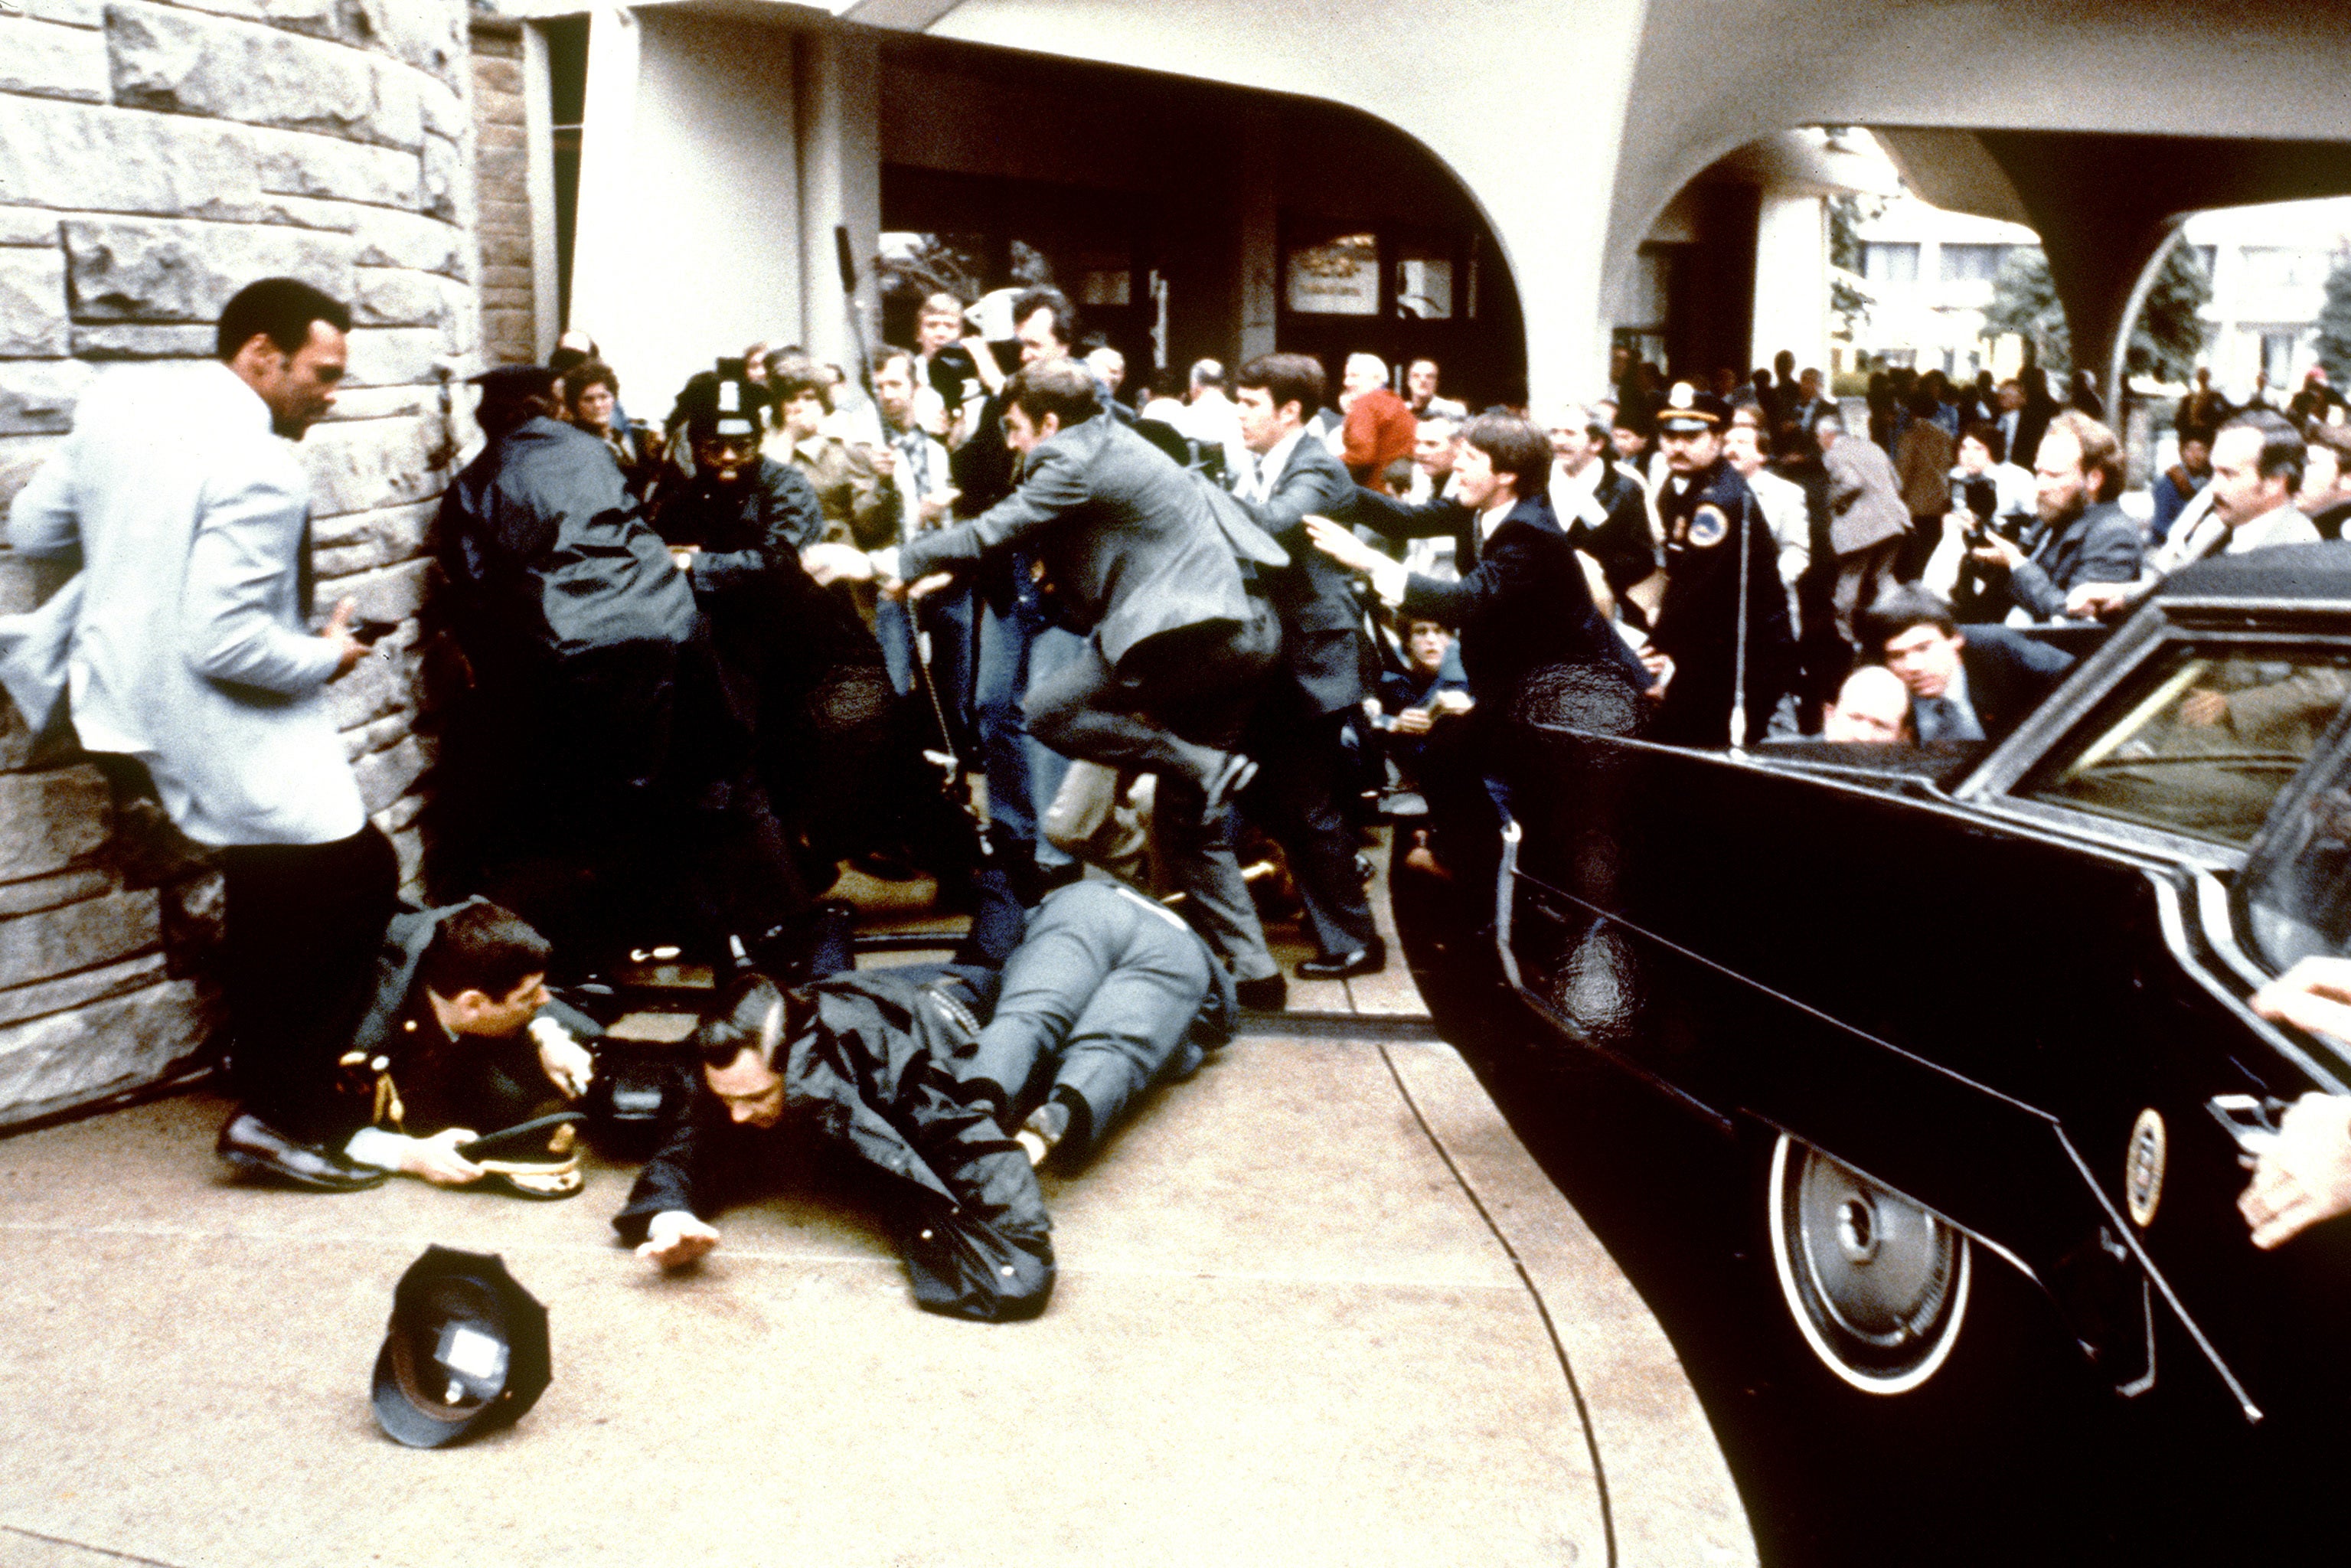 Assassination attempt against Ronald Reagan in 1981